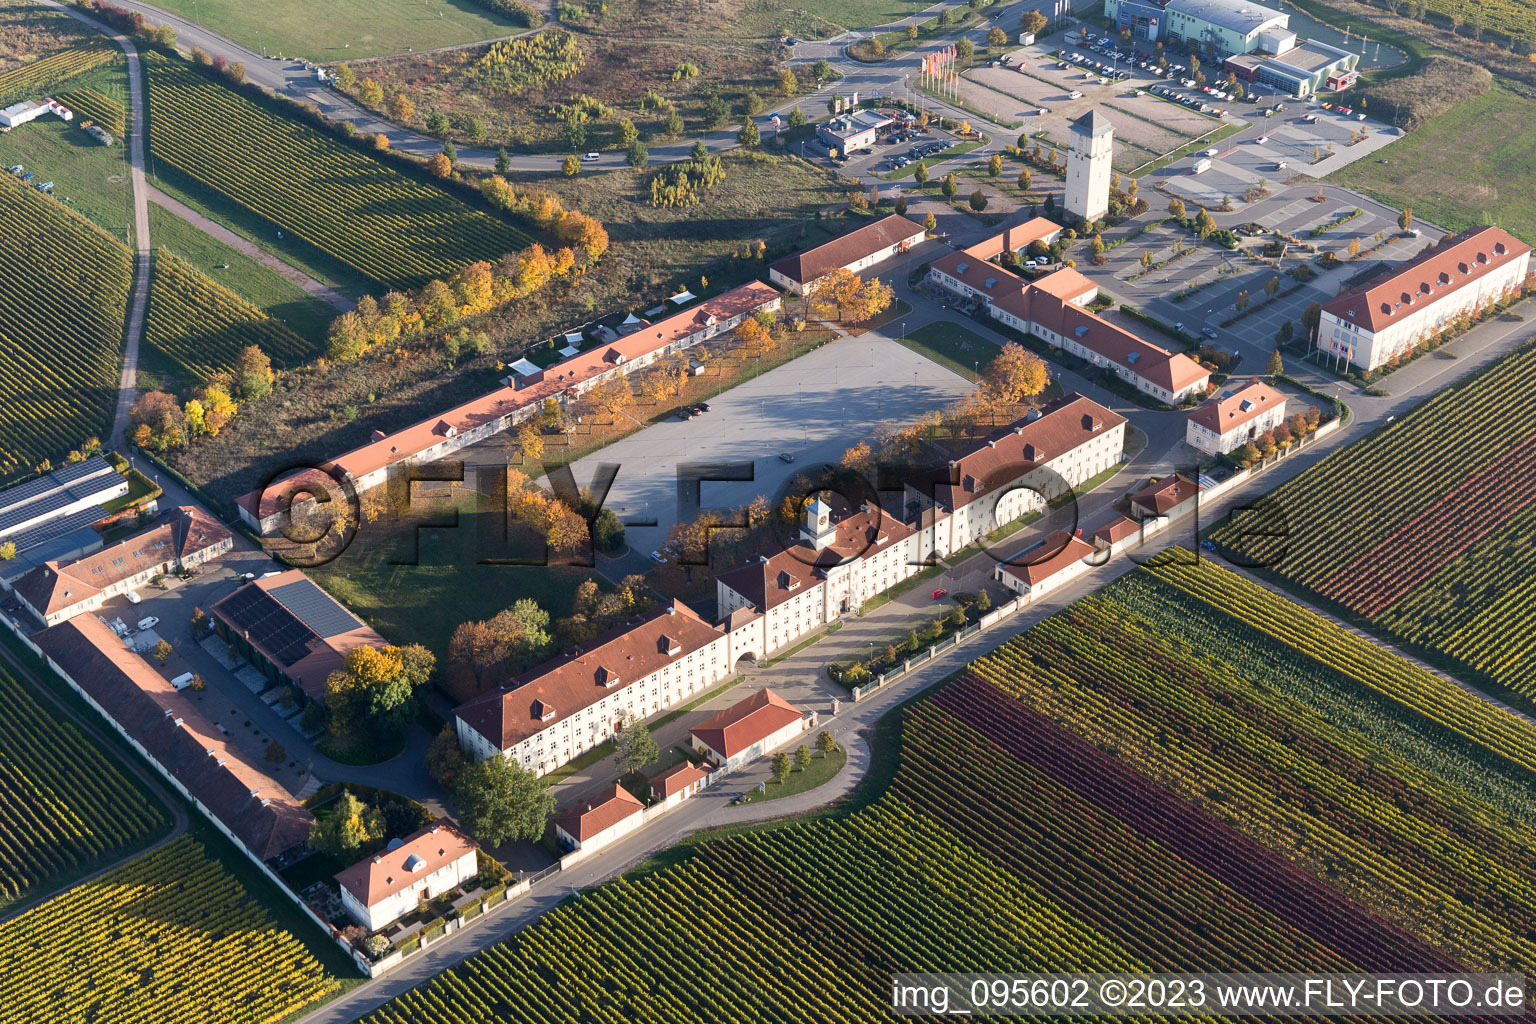 Luftbild von Le Quartier Hornbach in Neustadt an der Weinstraße im Bundesland Rheinland-Pfalz, Deutschland